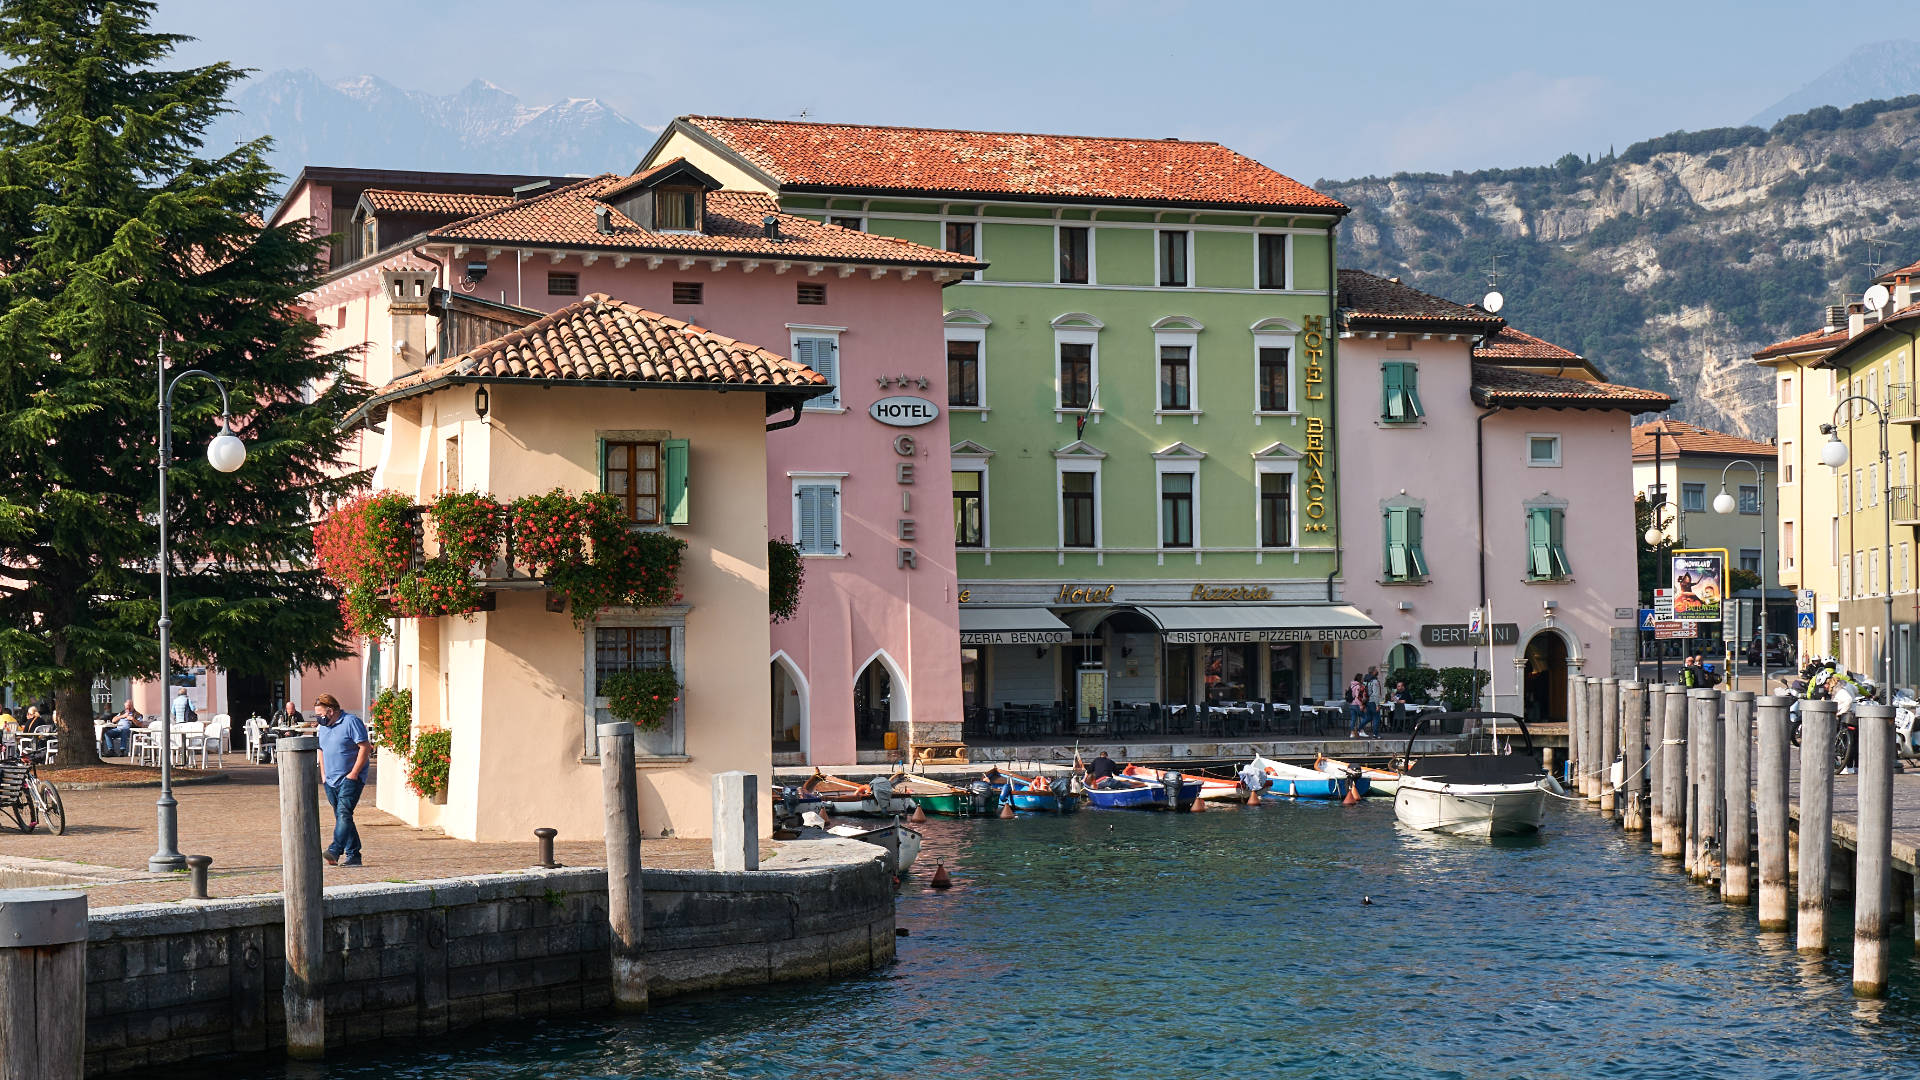 Hotel Benaco Torbole, Lago di Garda – vor ihm lag das deutsche Mini-U-Boot.